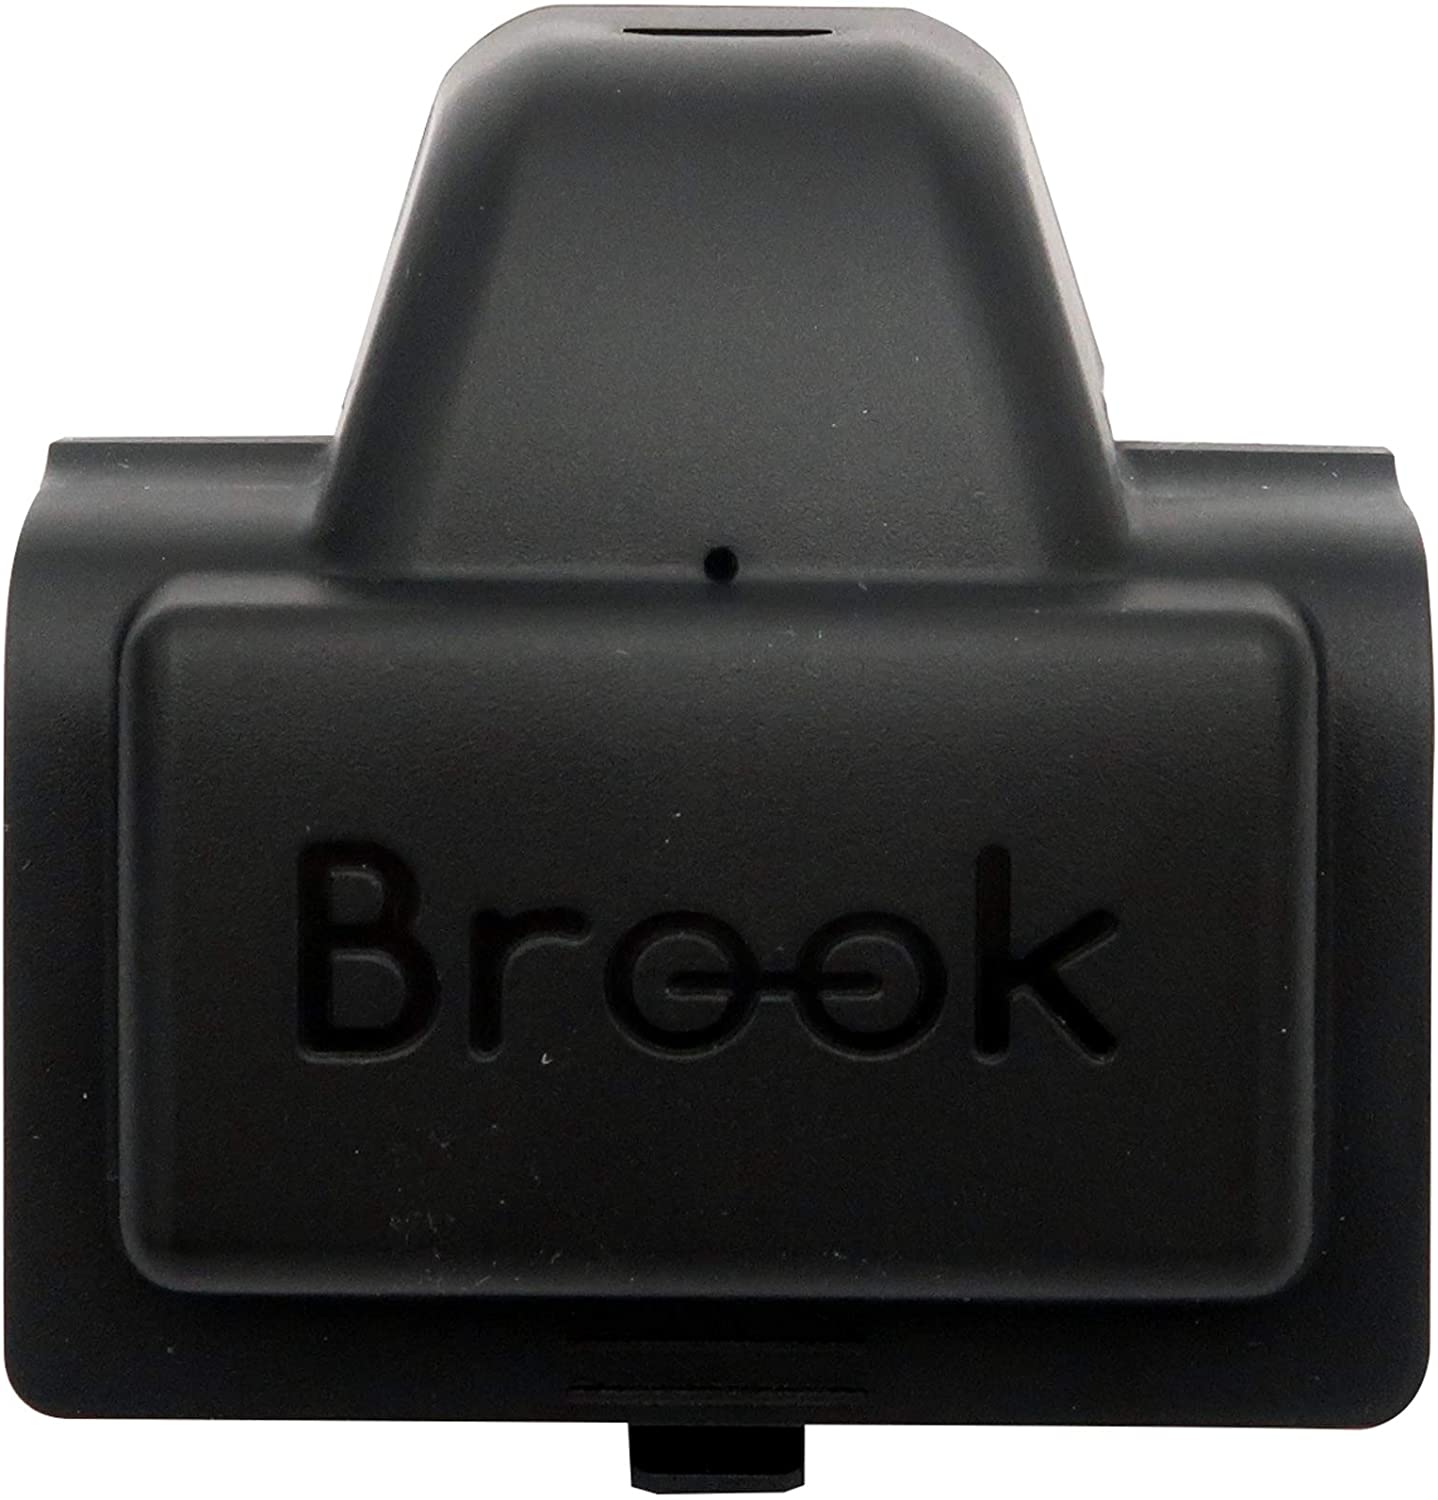 [Brook] Xbox one用 無線コントローラ アダプター PS4 任天堂 Switch PC Xbox One用 ターボ および 再マッピングの追加 モーションコントロールをサポート ワイヤレス リマップ機能 ターボ機能 ブラック（4183-BK）